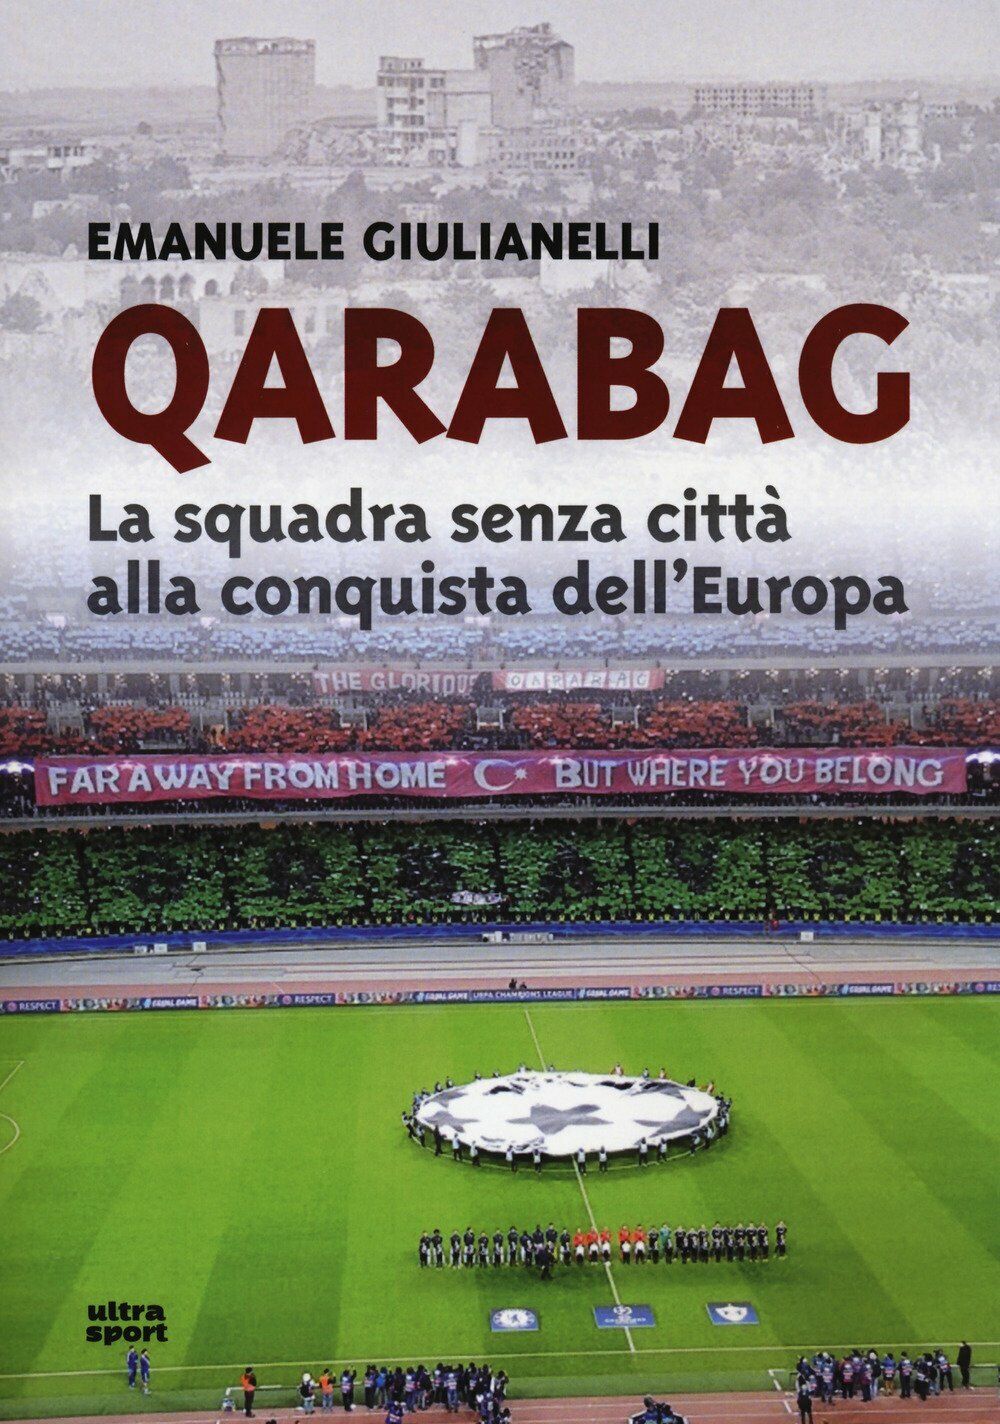 Qarabag: La squadra senza citt? alla conquista delL'Europa - Giulianelli, 2018